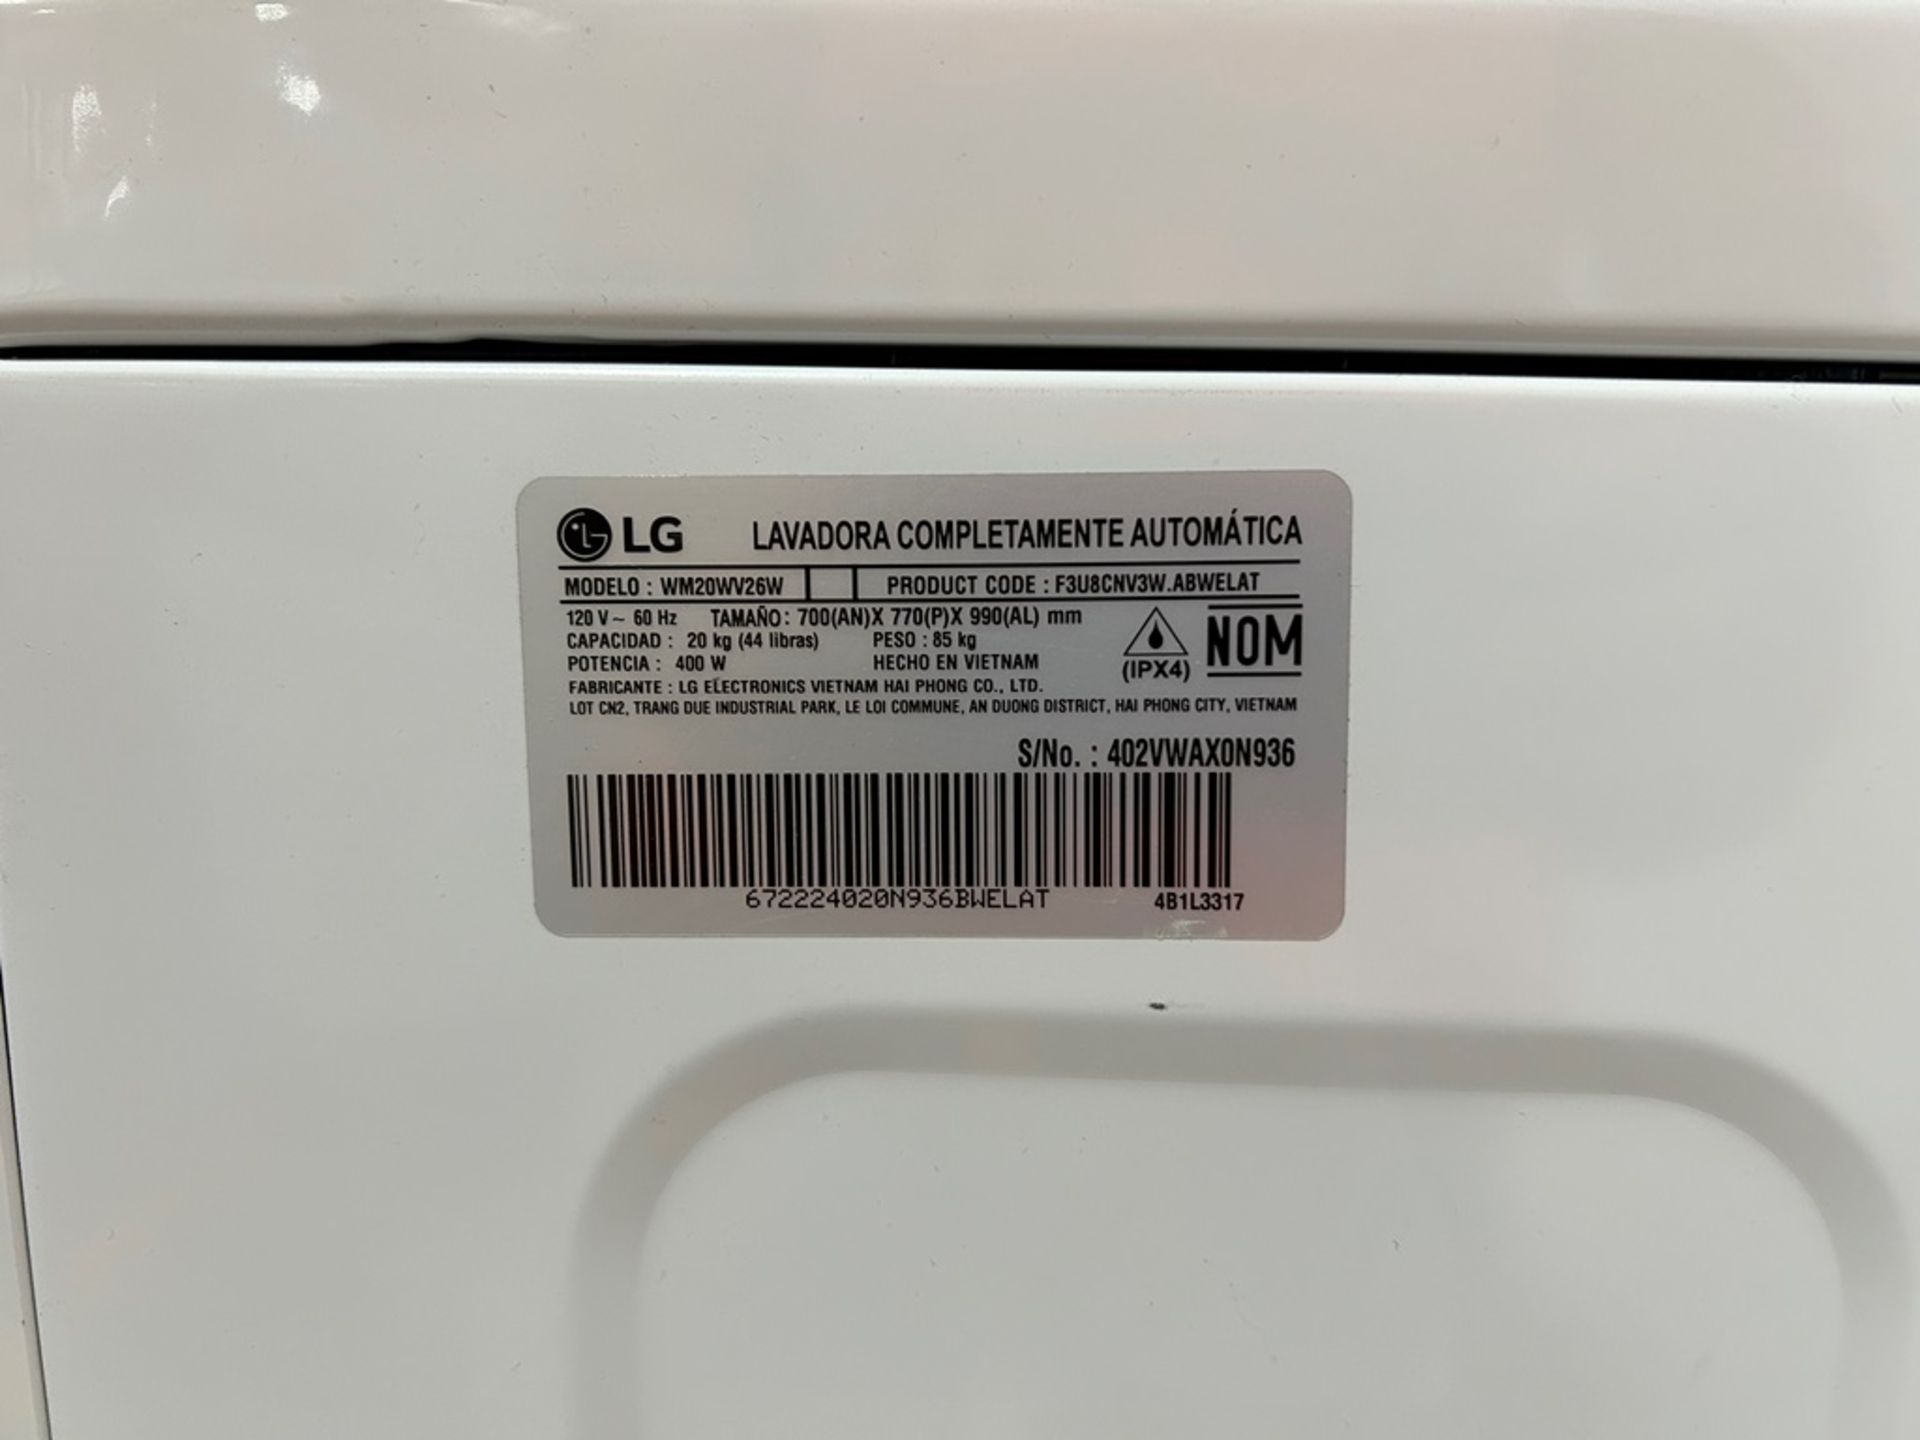 Lavadora de 20 KG, Marca LG, Modelo WM20WV26W, Serie X0N936, Color BLANCO (Equipo de devolución) - Image 6 of 8